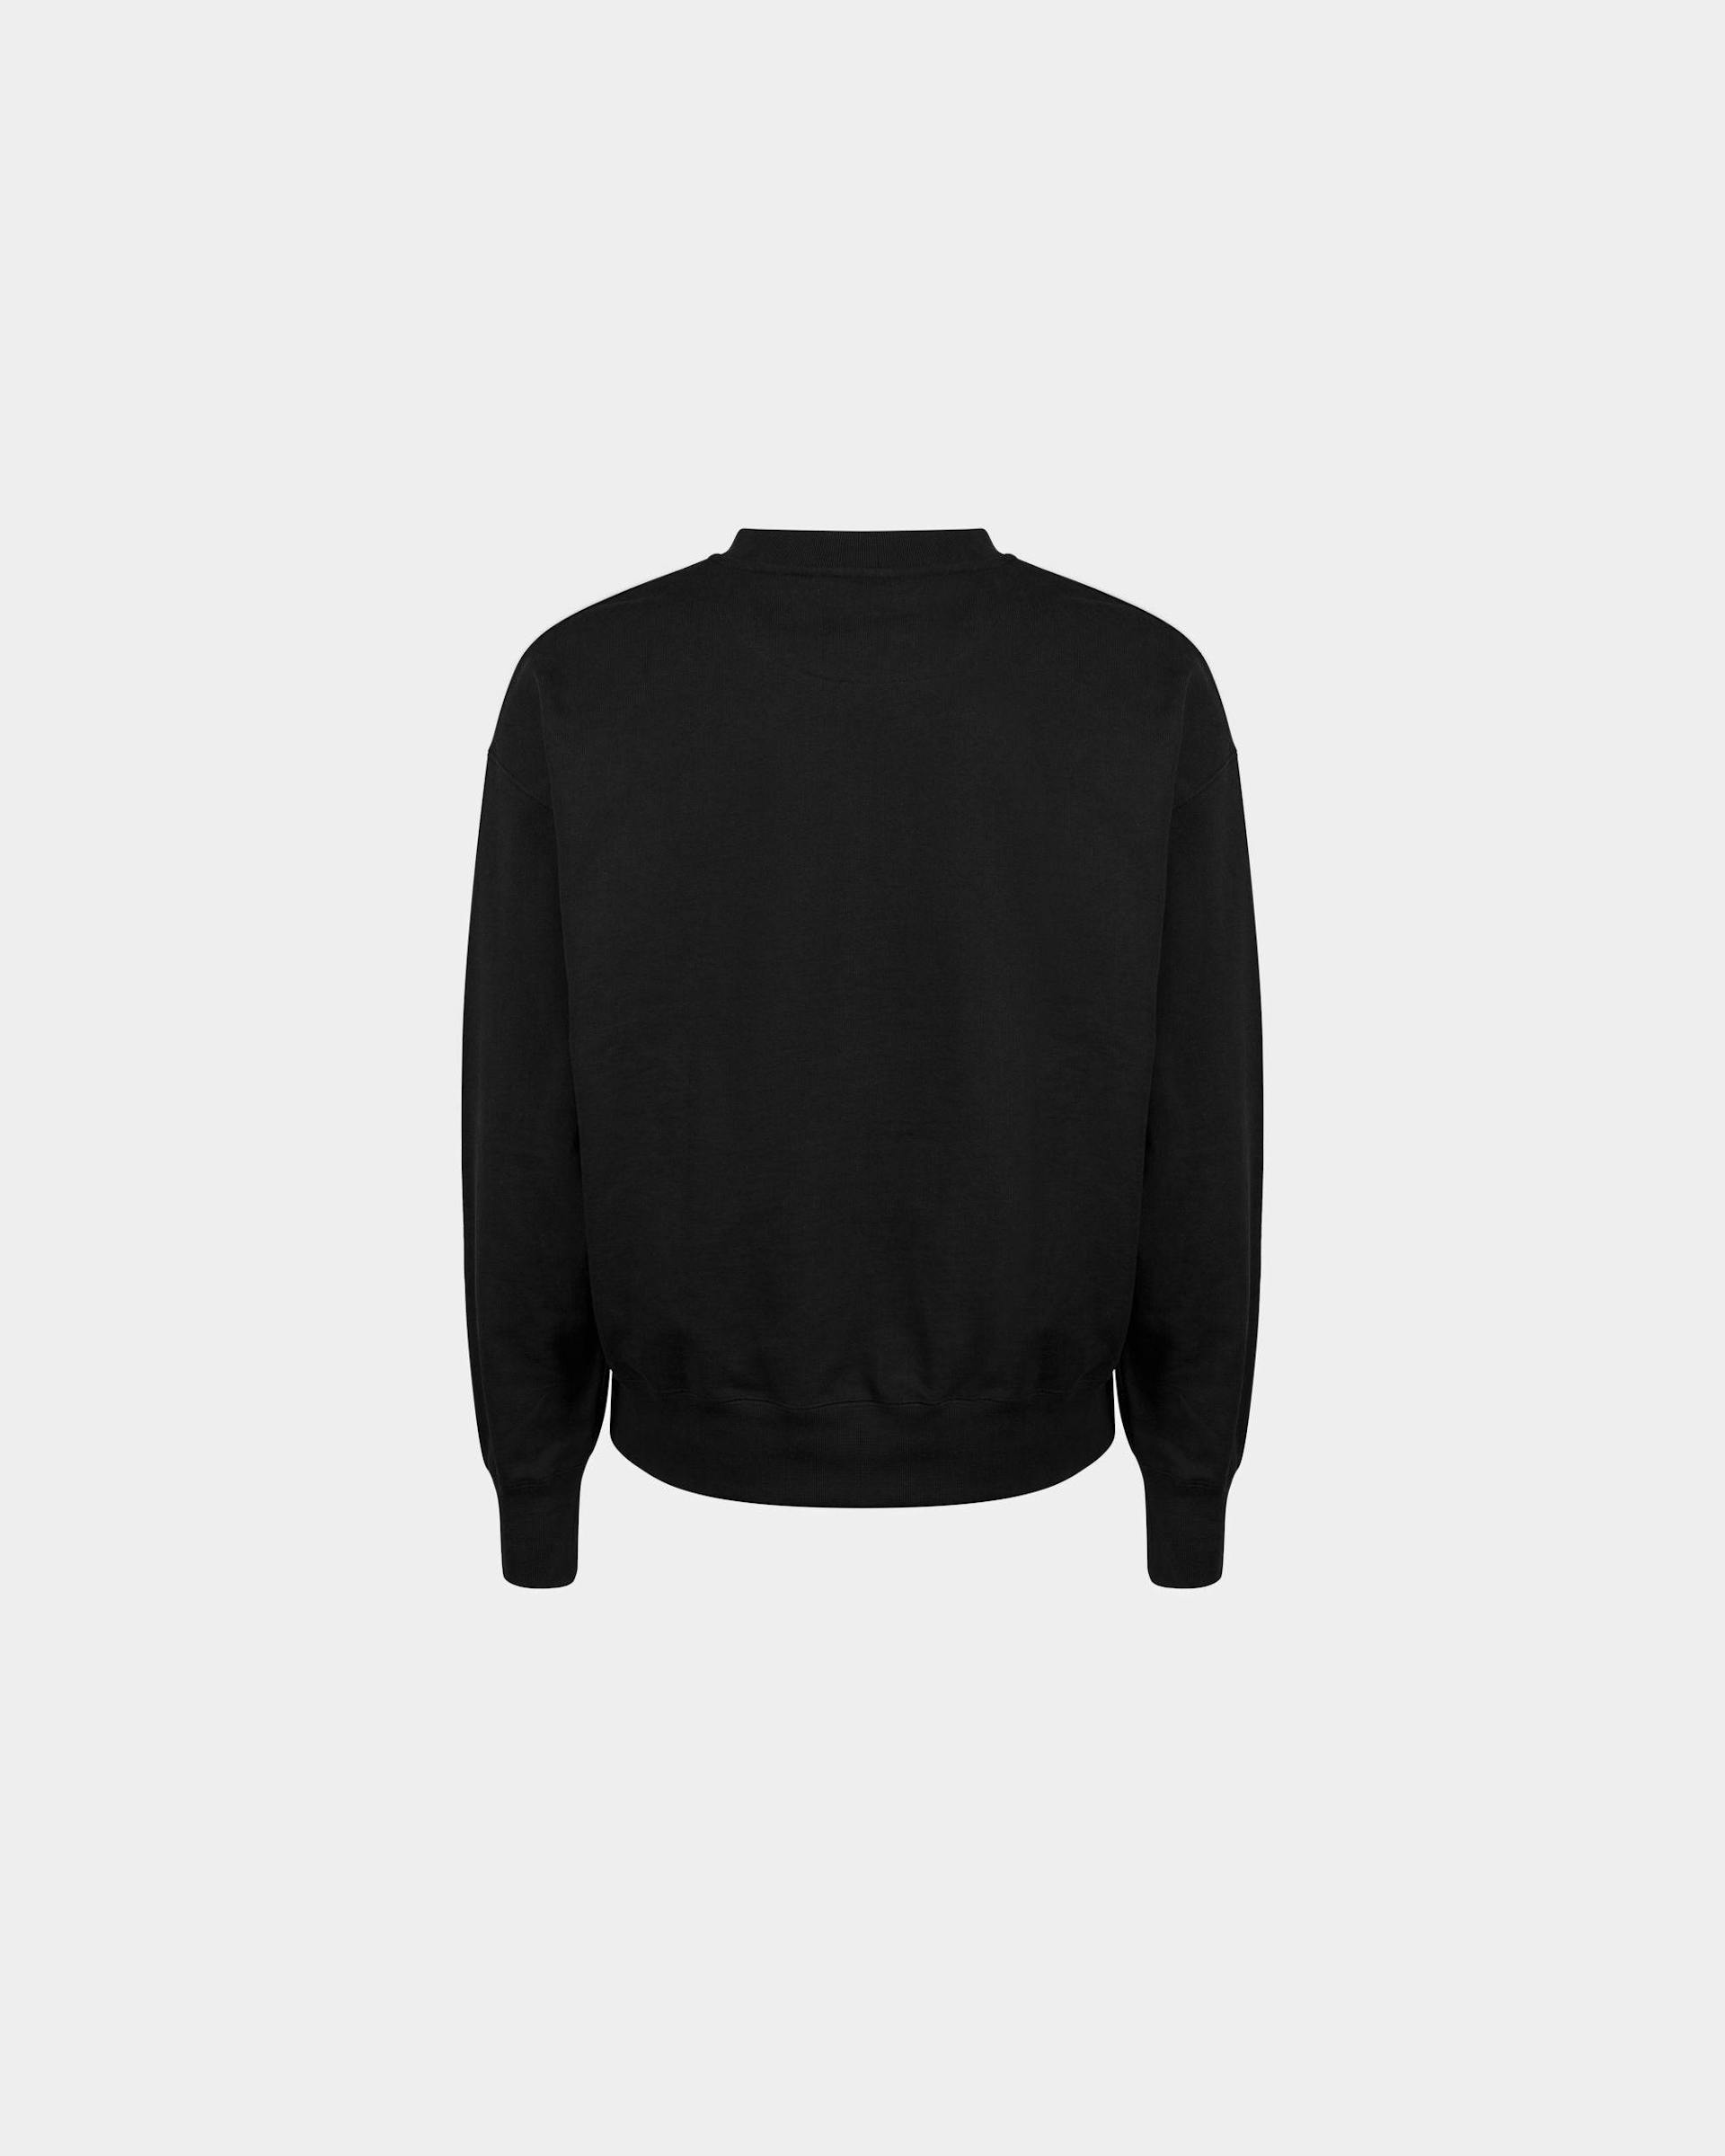 Men's Sweatshirt in Black Cotton | Bally | Still Life Back